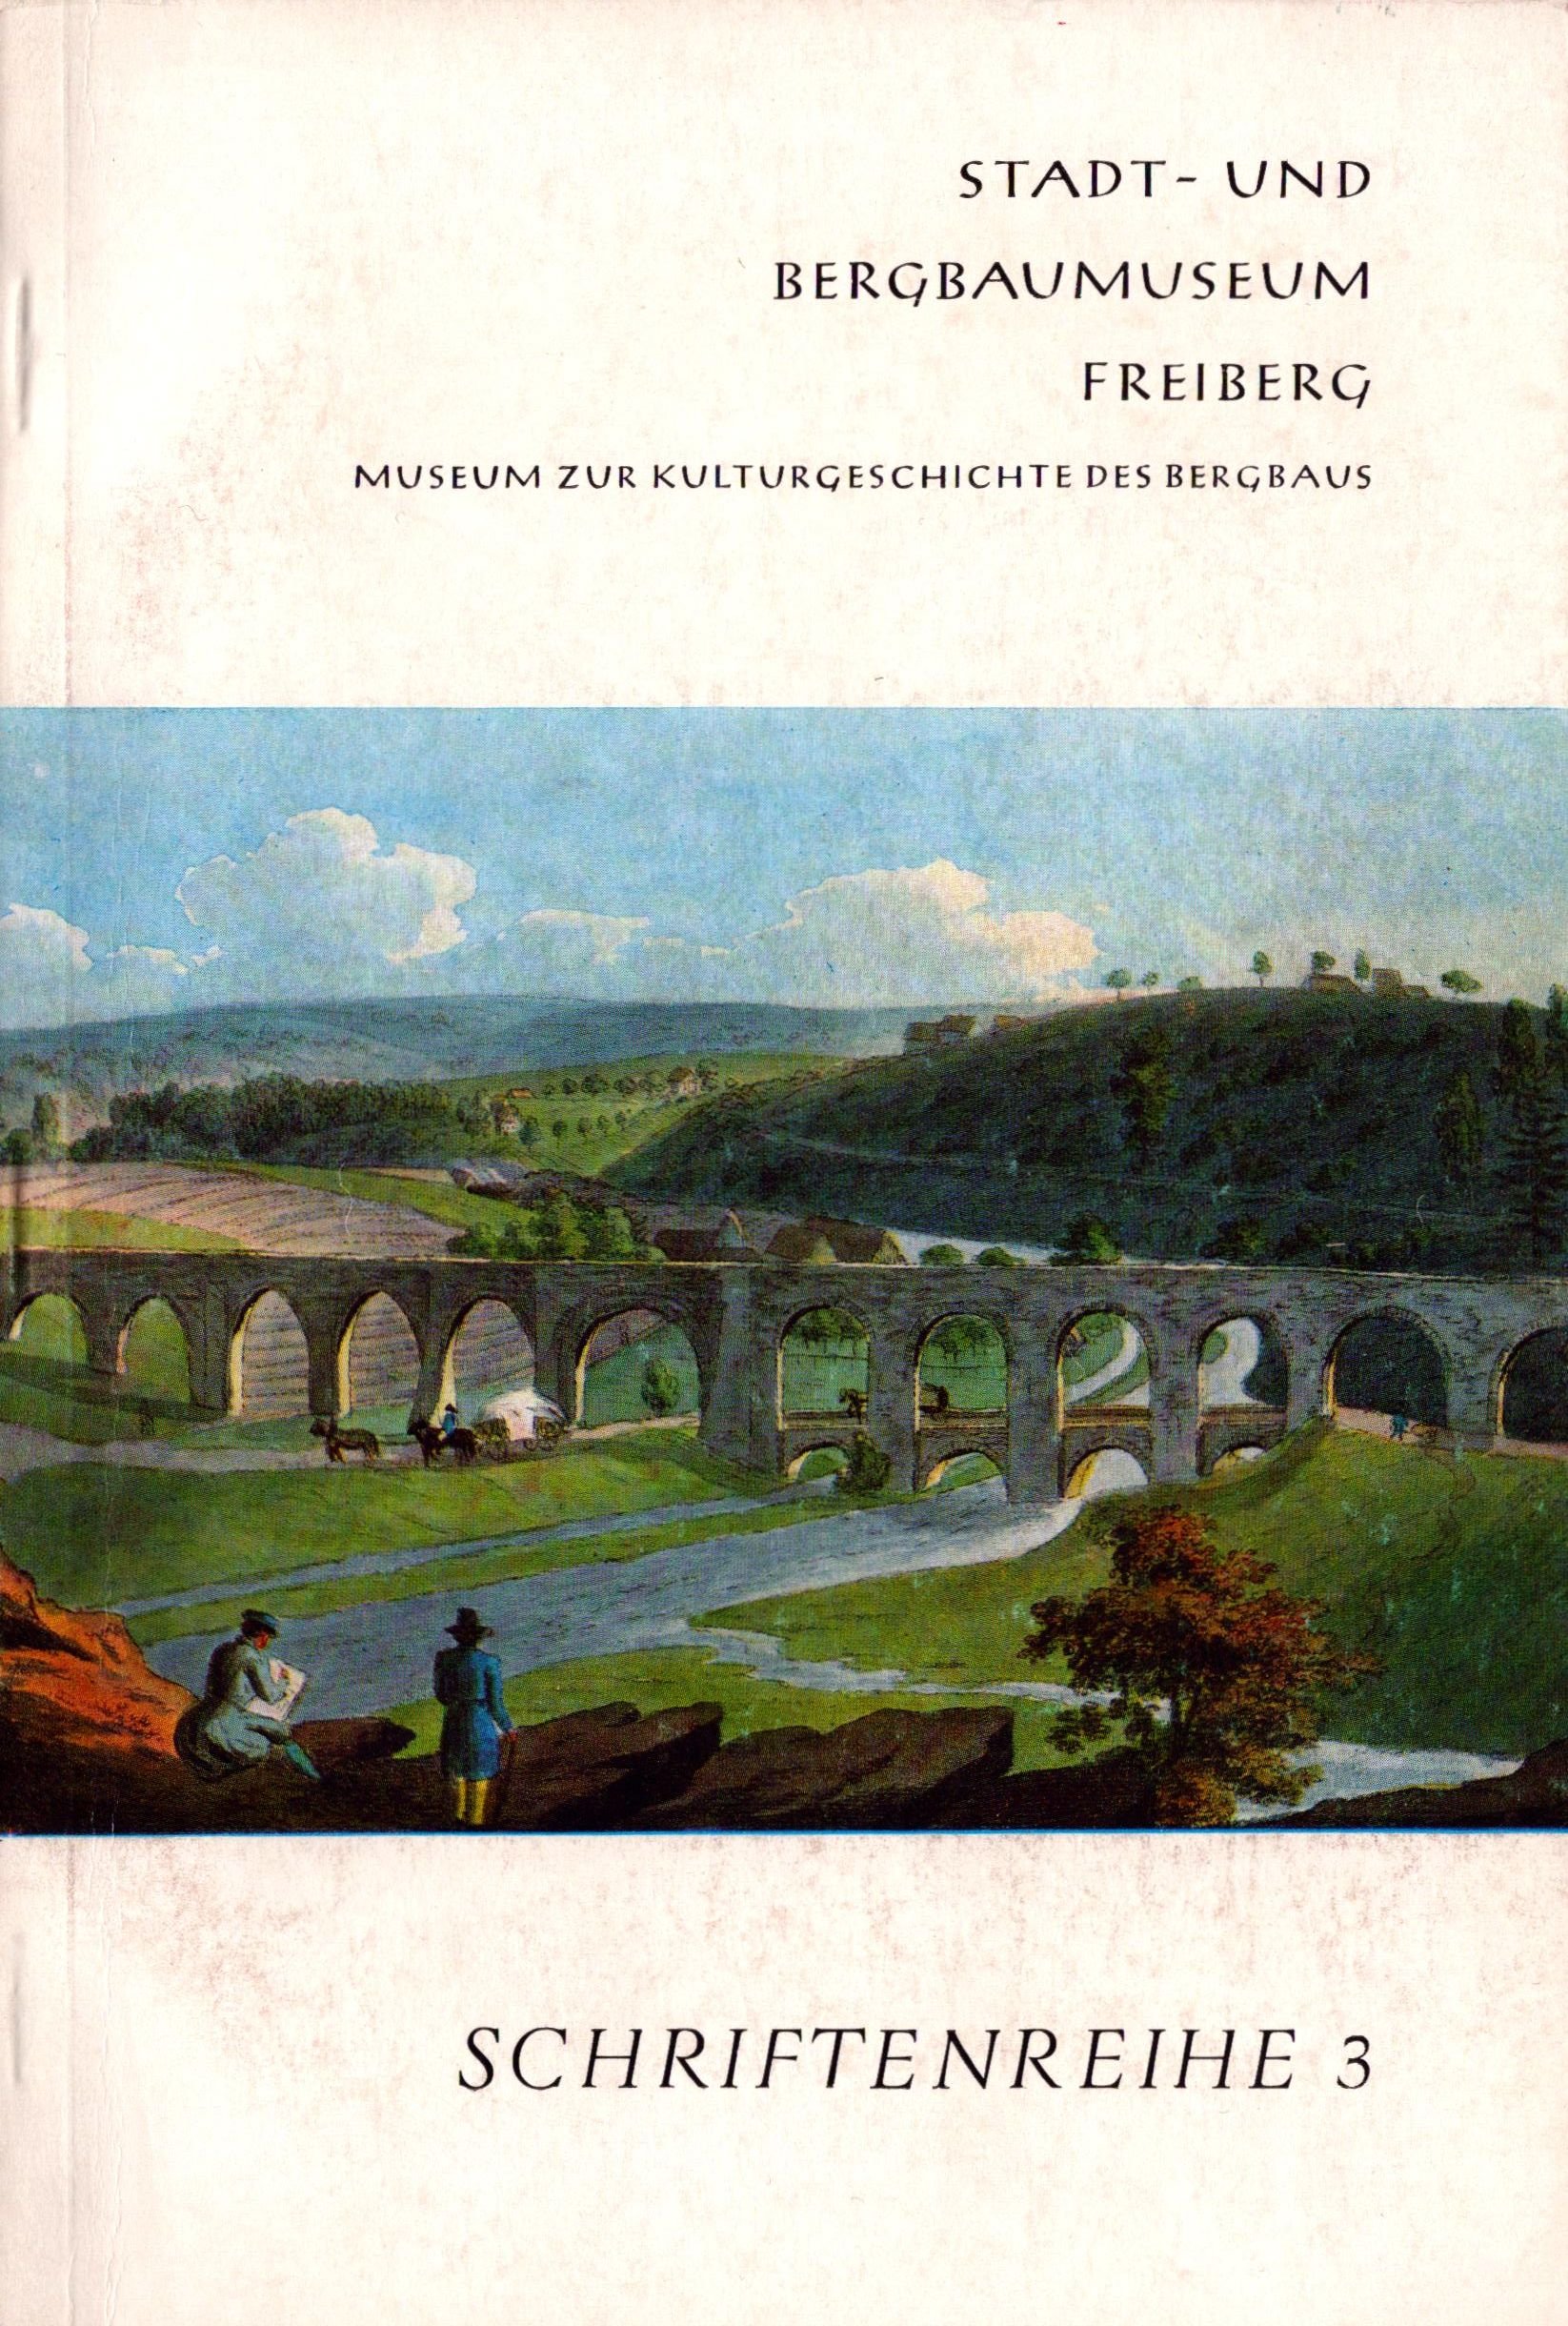 Stadt- und Bergbaumuseum Freiberg - Schriftenreihe 3 (Archiv SAXONIA-FREIBERG-STIFTUNG CC BY-NC-SA)